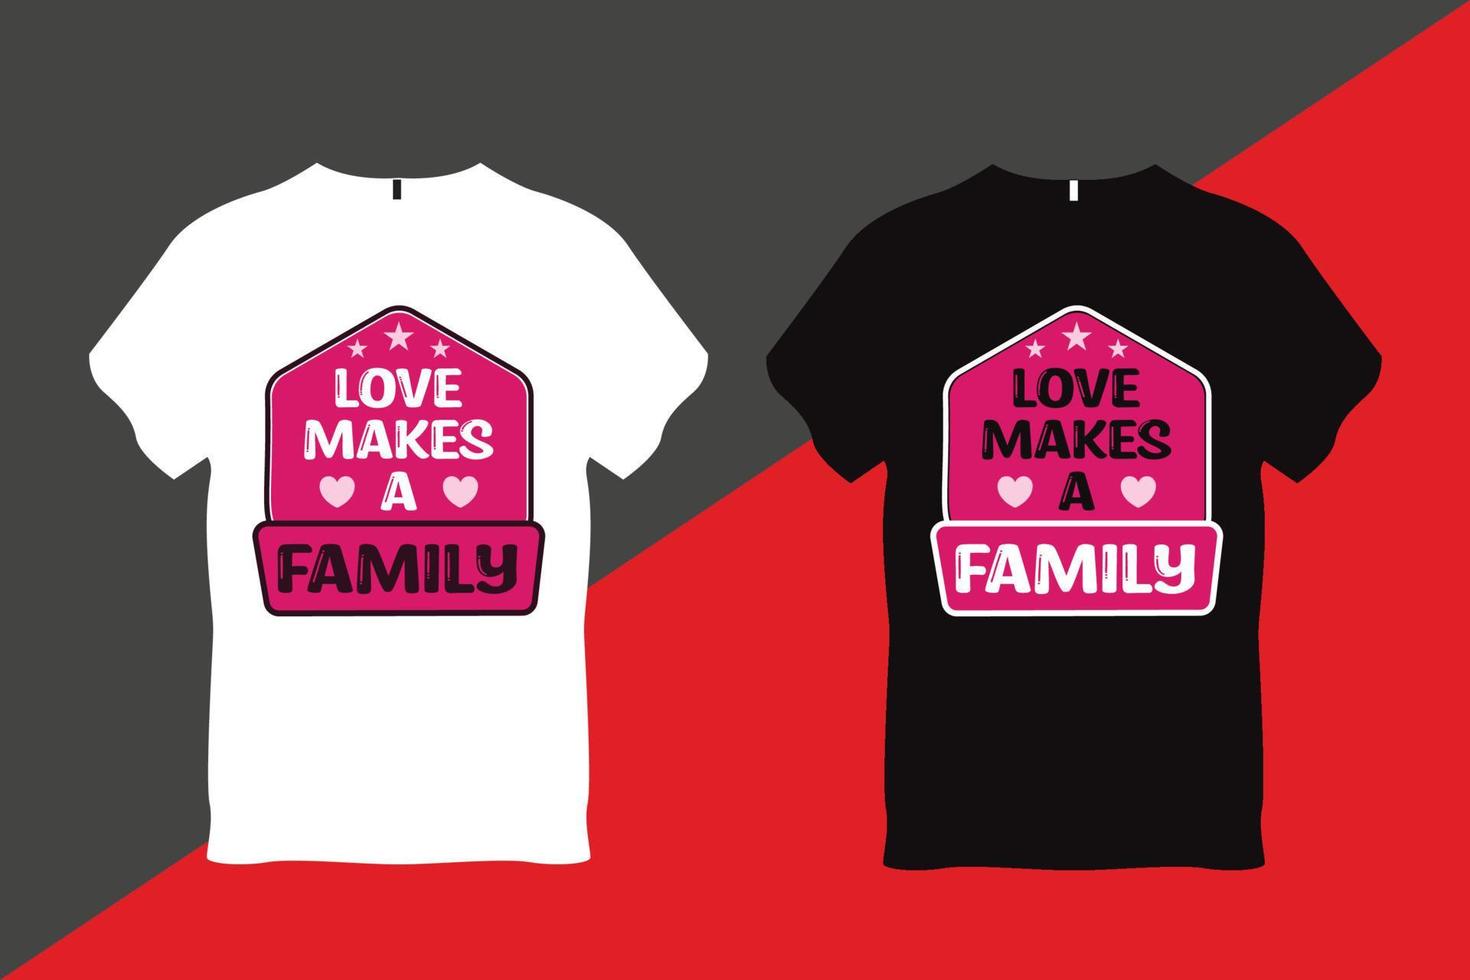 kärlek gör en familj familj kärlek Citat typografi t skjorta design vektor